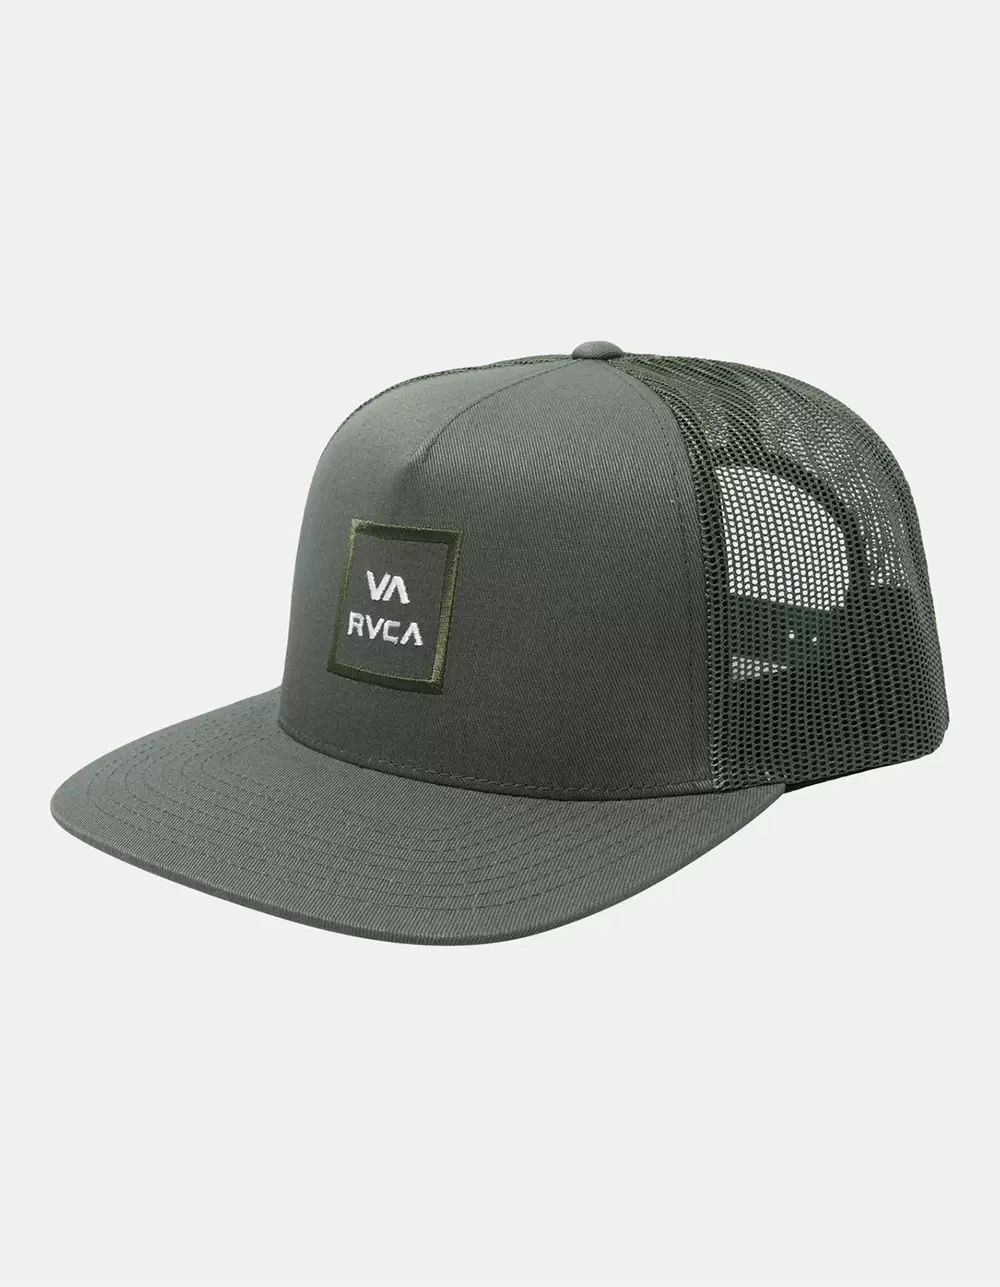 RVCA VA All The Way Mens Trucker Hat | Tillys